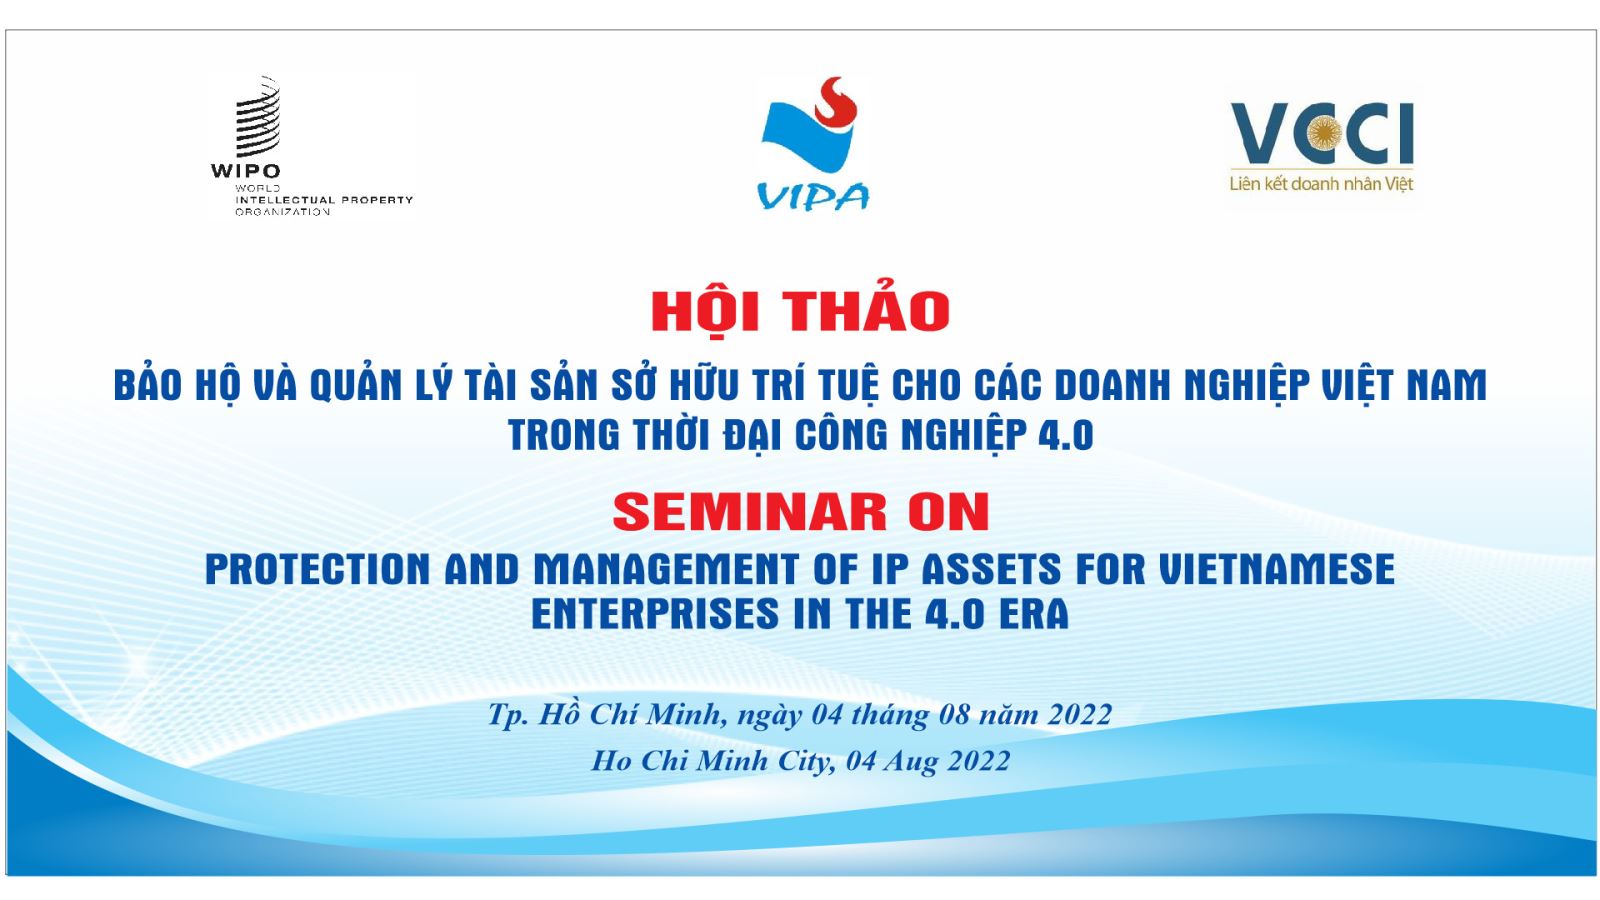 Hội thảo “Bảo hộ và quản lý tài sản sở hữu trí tuệ cho doanh nghiệp Việt Nam trong thời đại công nghiệp 4.0” tại thành phố Hồ Chí Minh